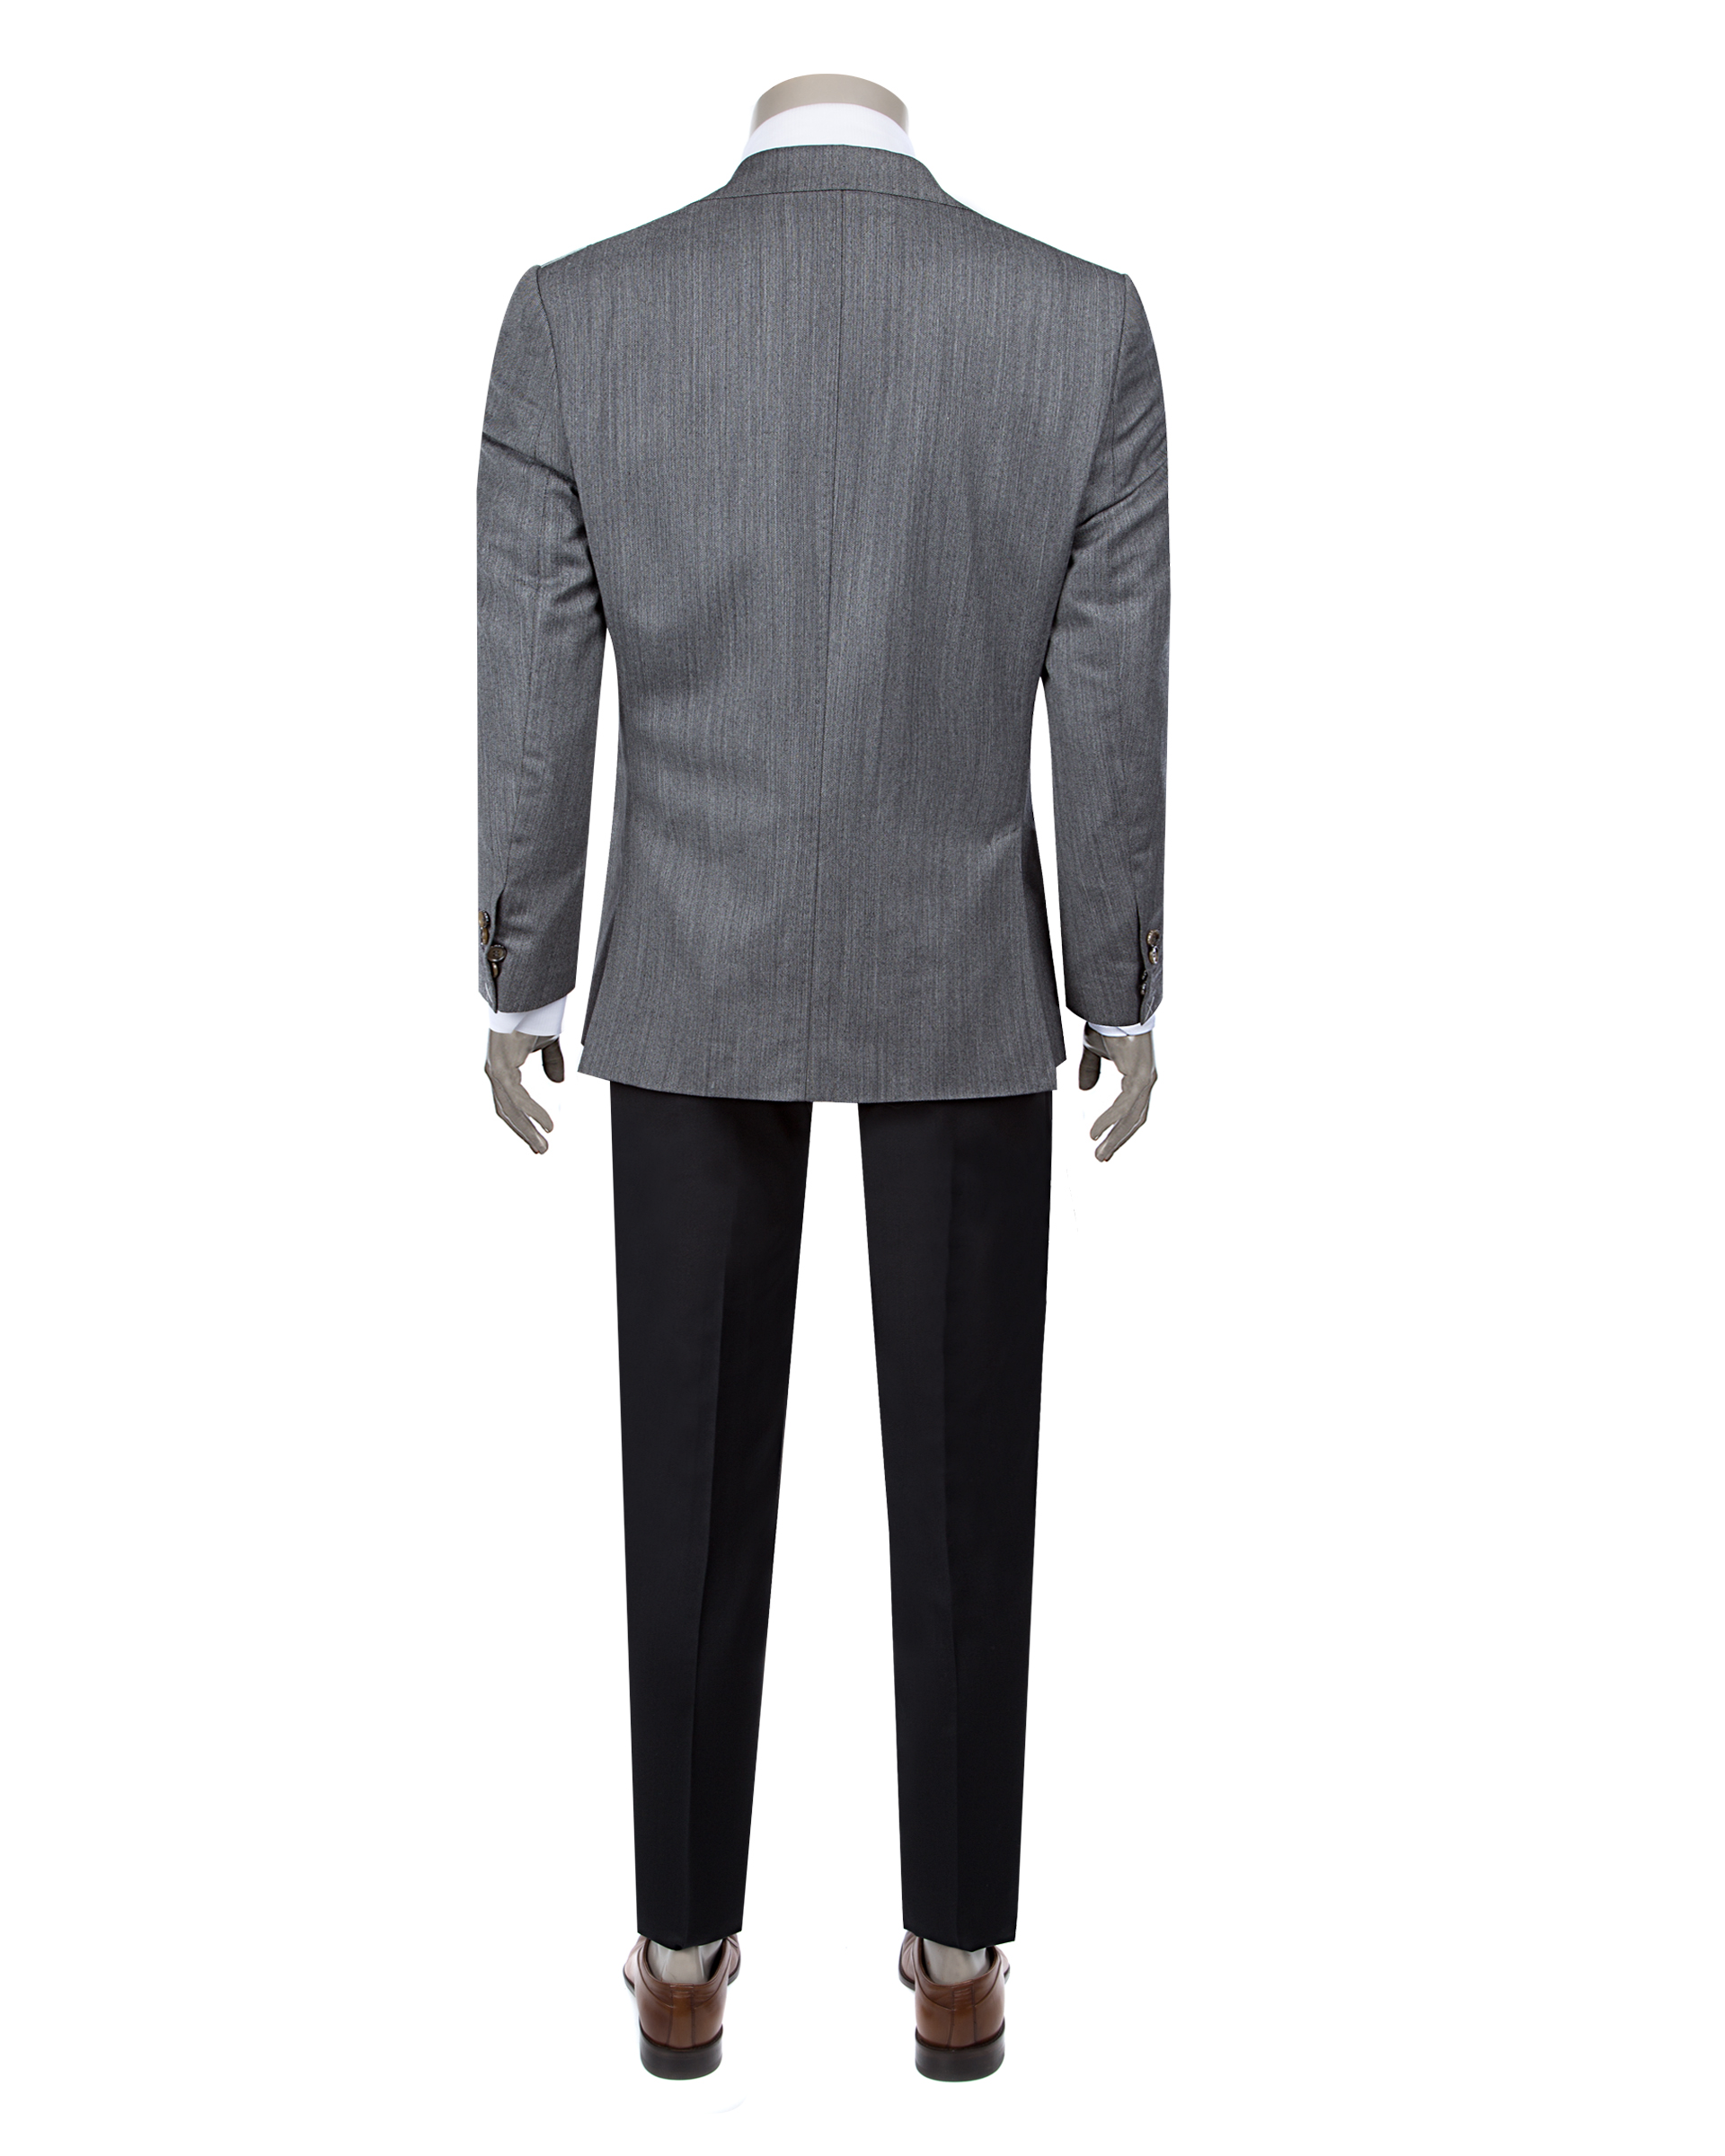 Damat Tween Damat Regular Fit Antrasit Kombinli Takım Elbise. 2